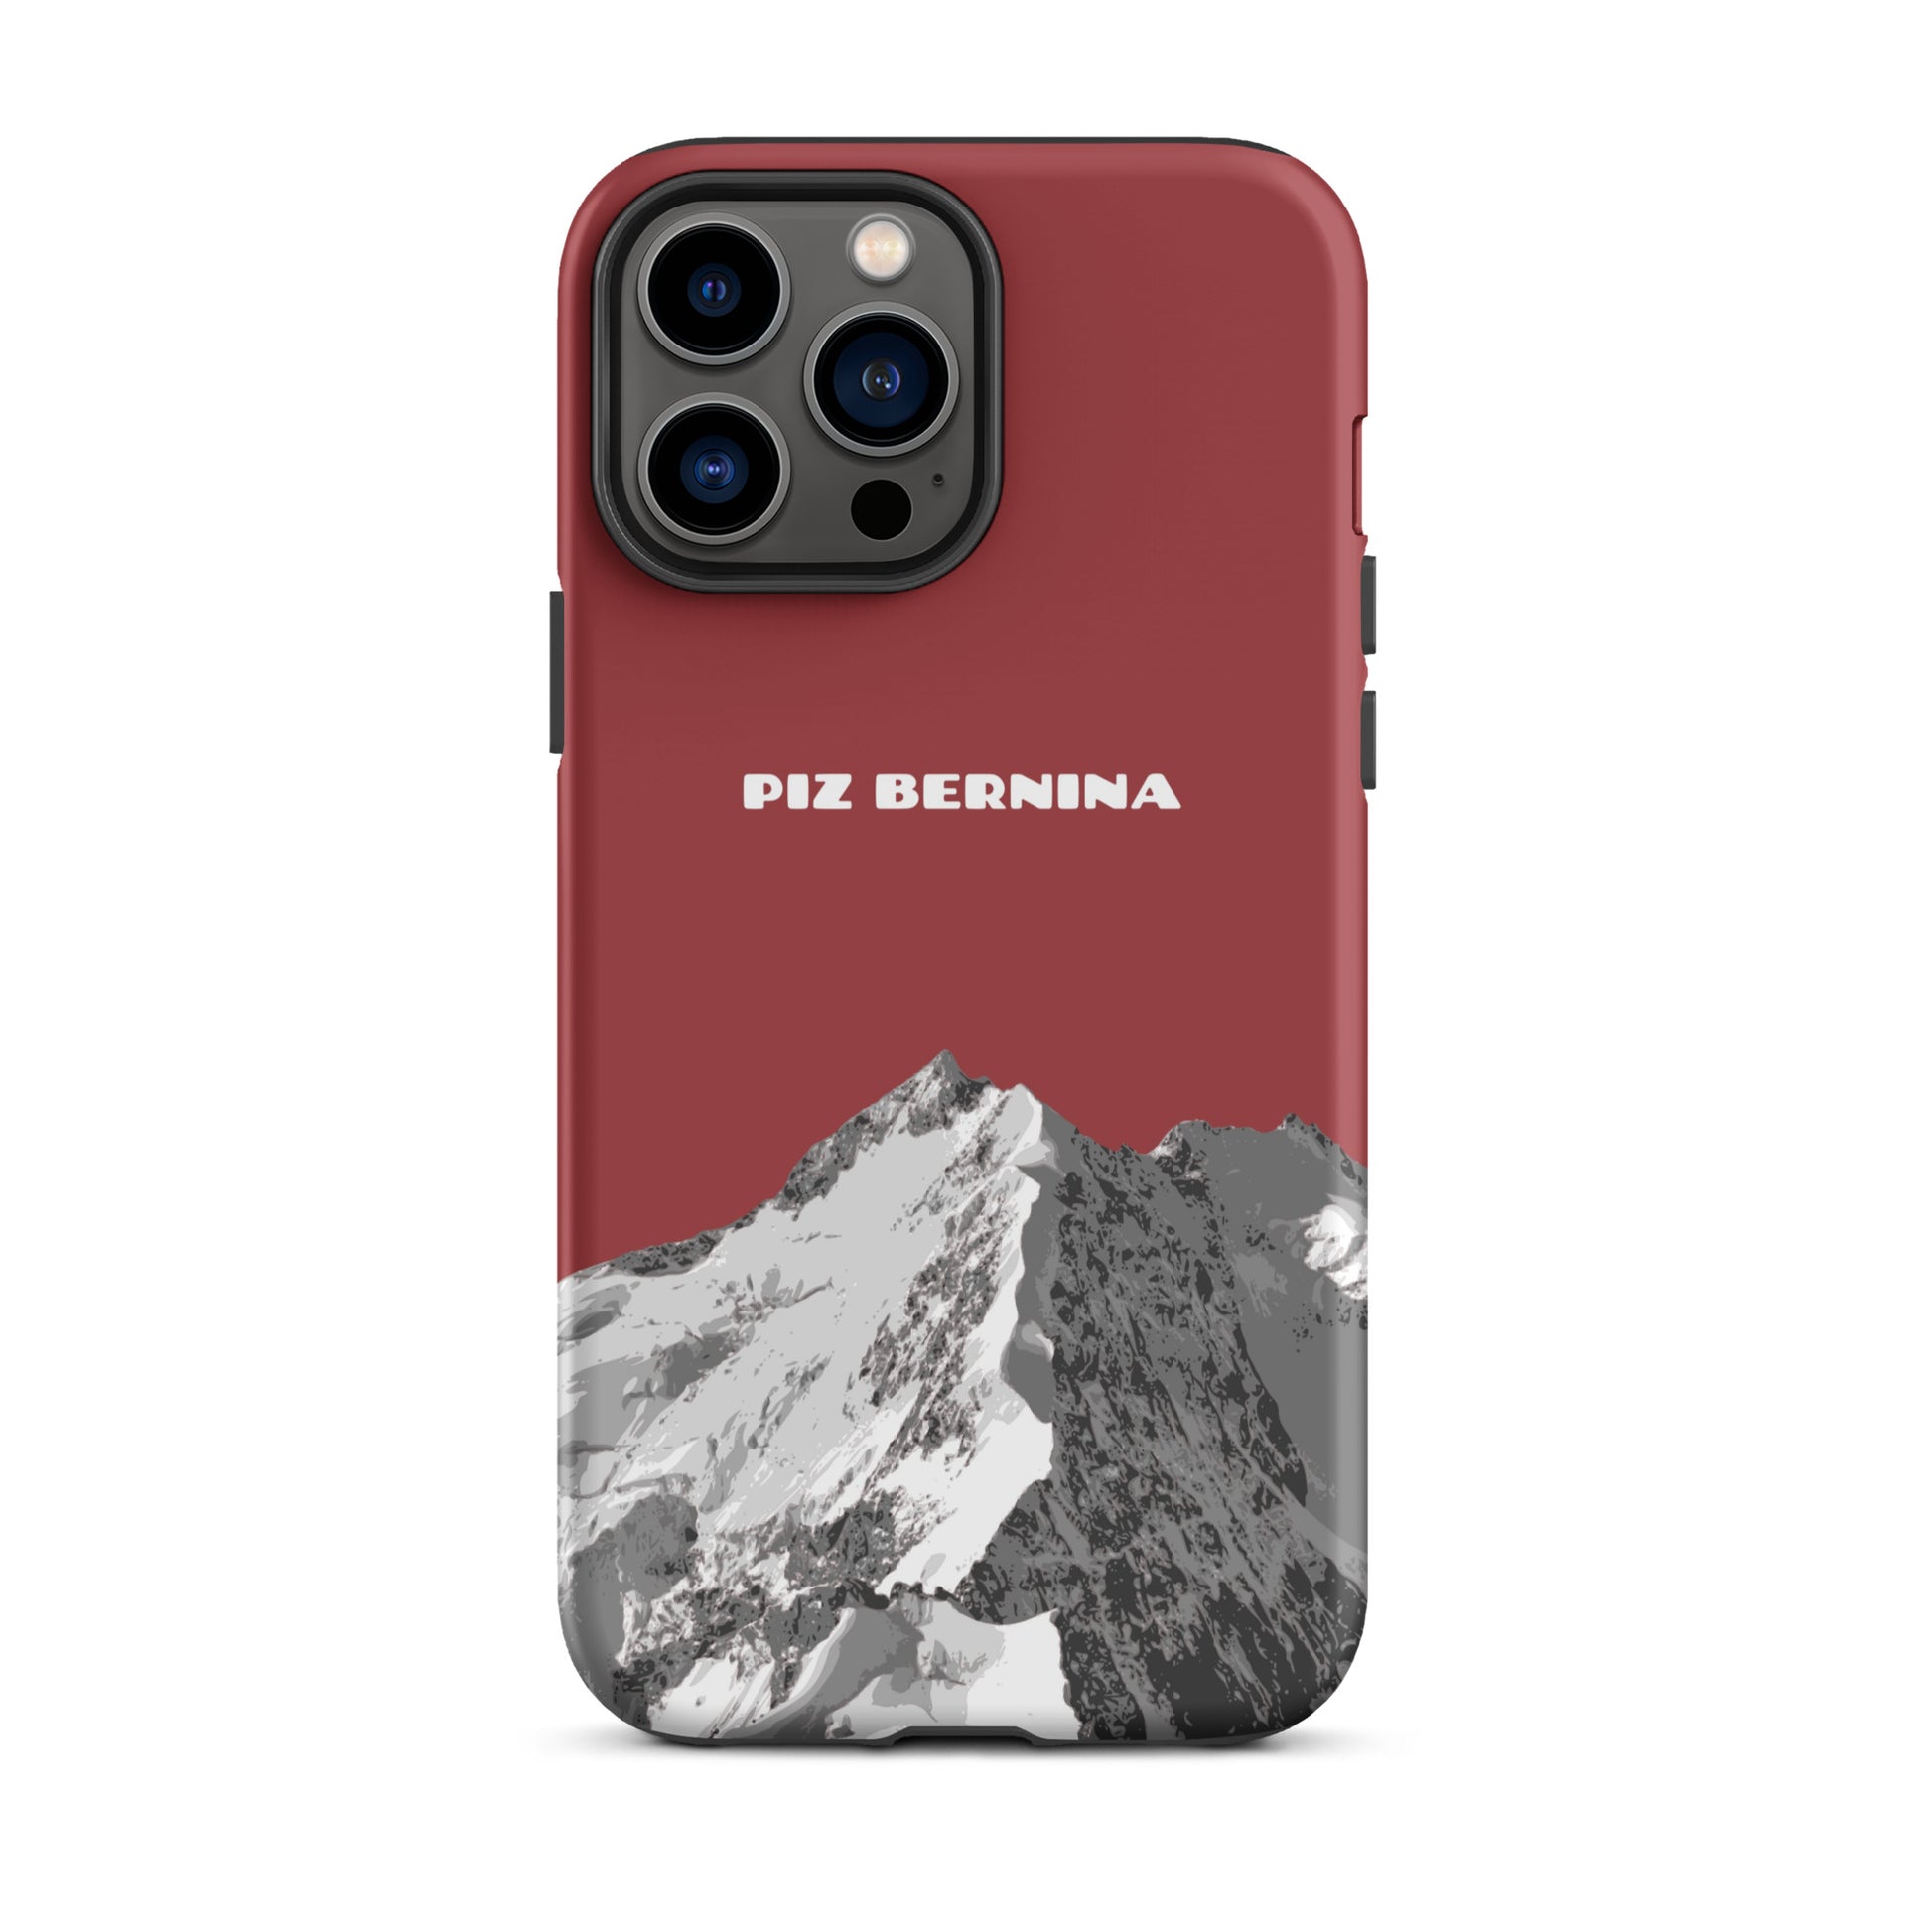 Hülle für das iPhone 13 Pro Max von Apple in der Farbe Rot, dass den Piz Bernina in Graubünden zeigt.